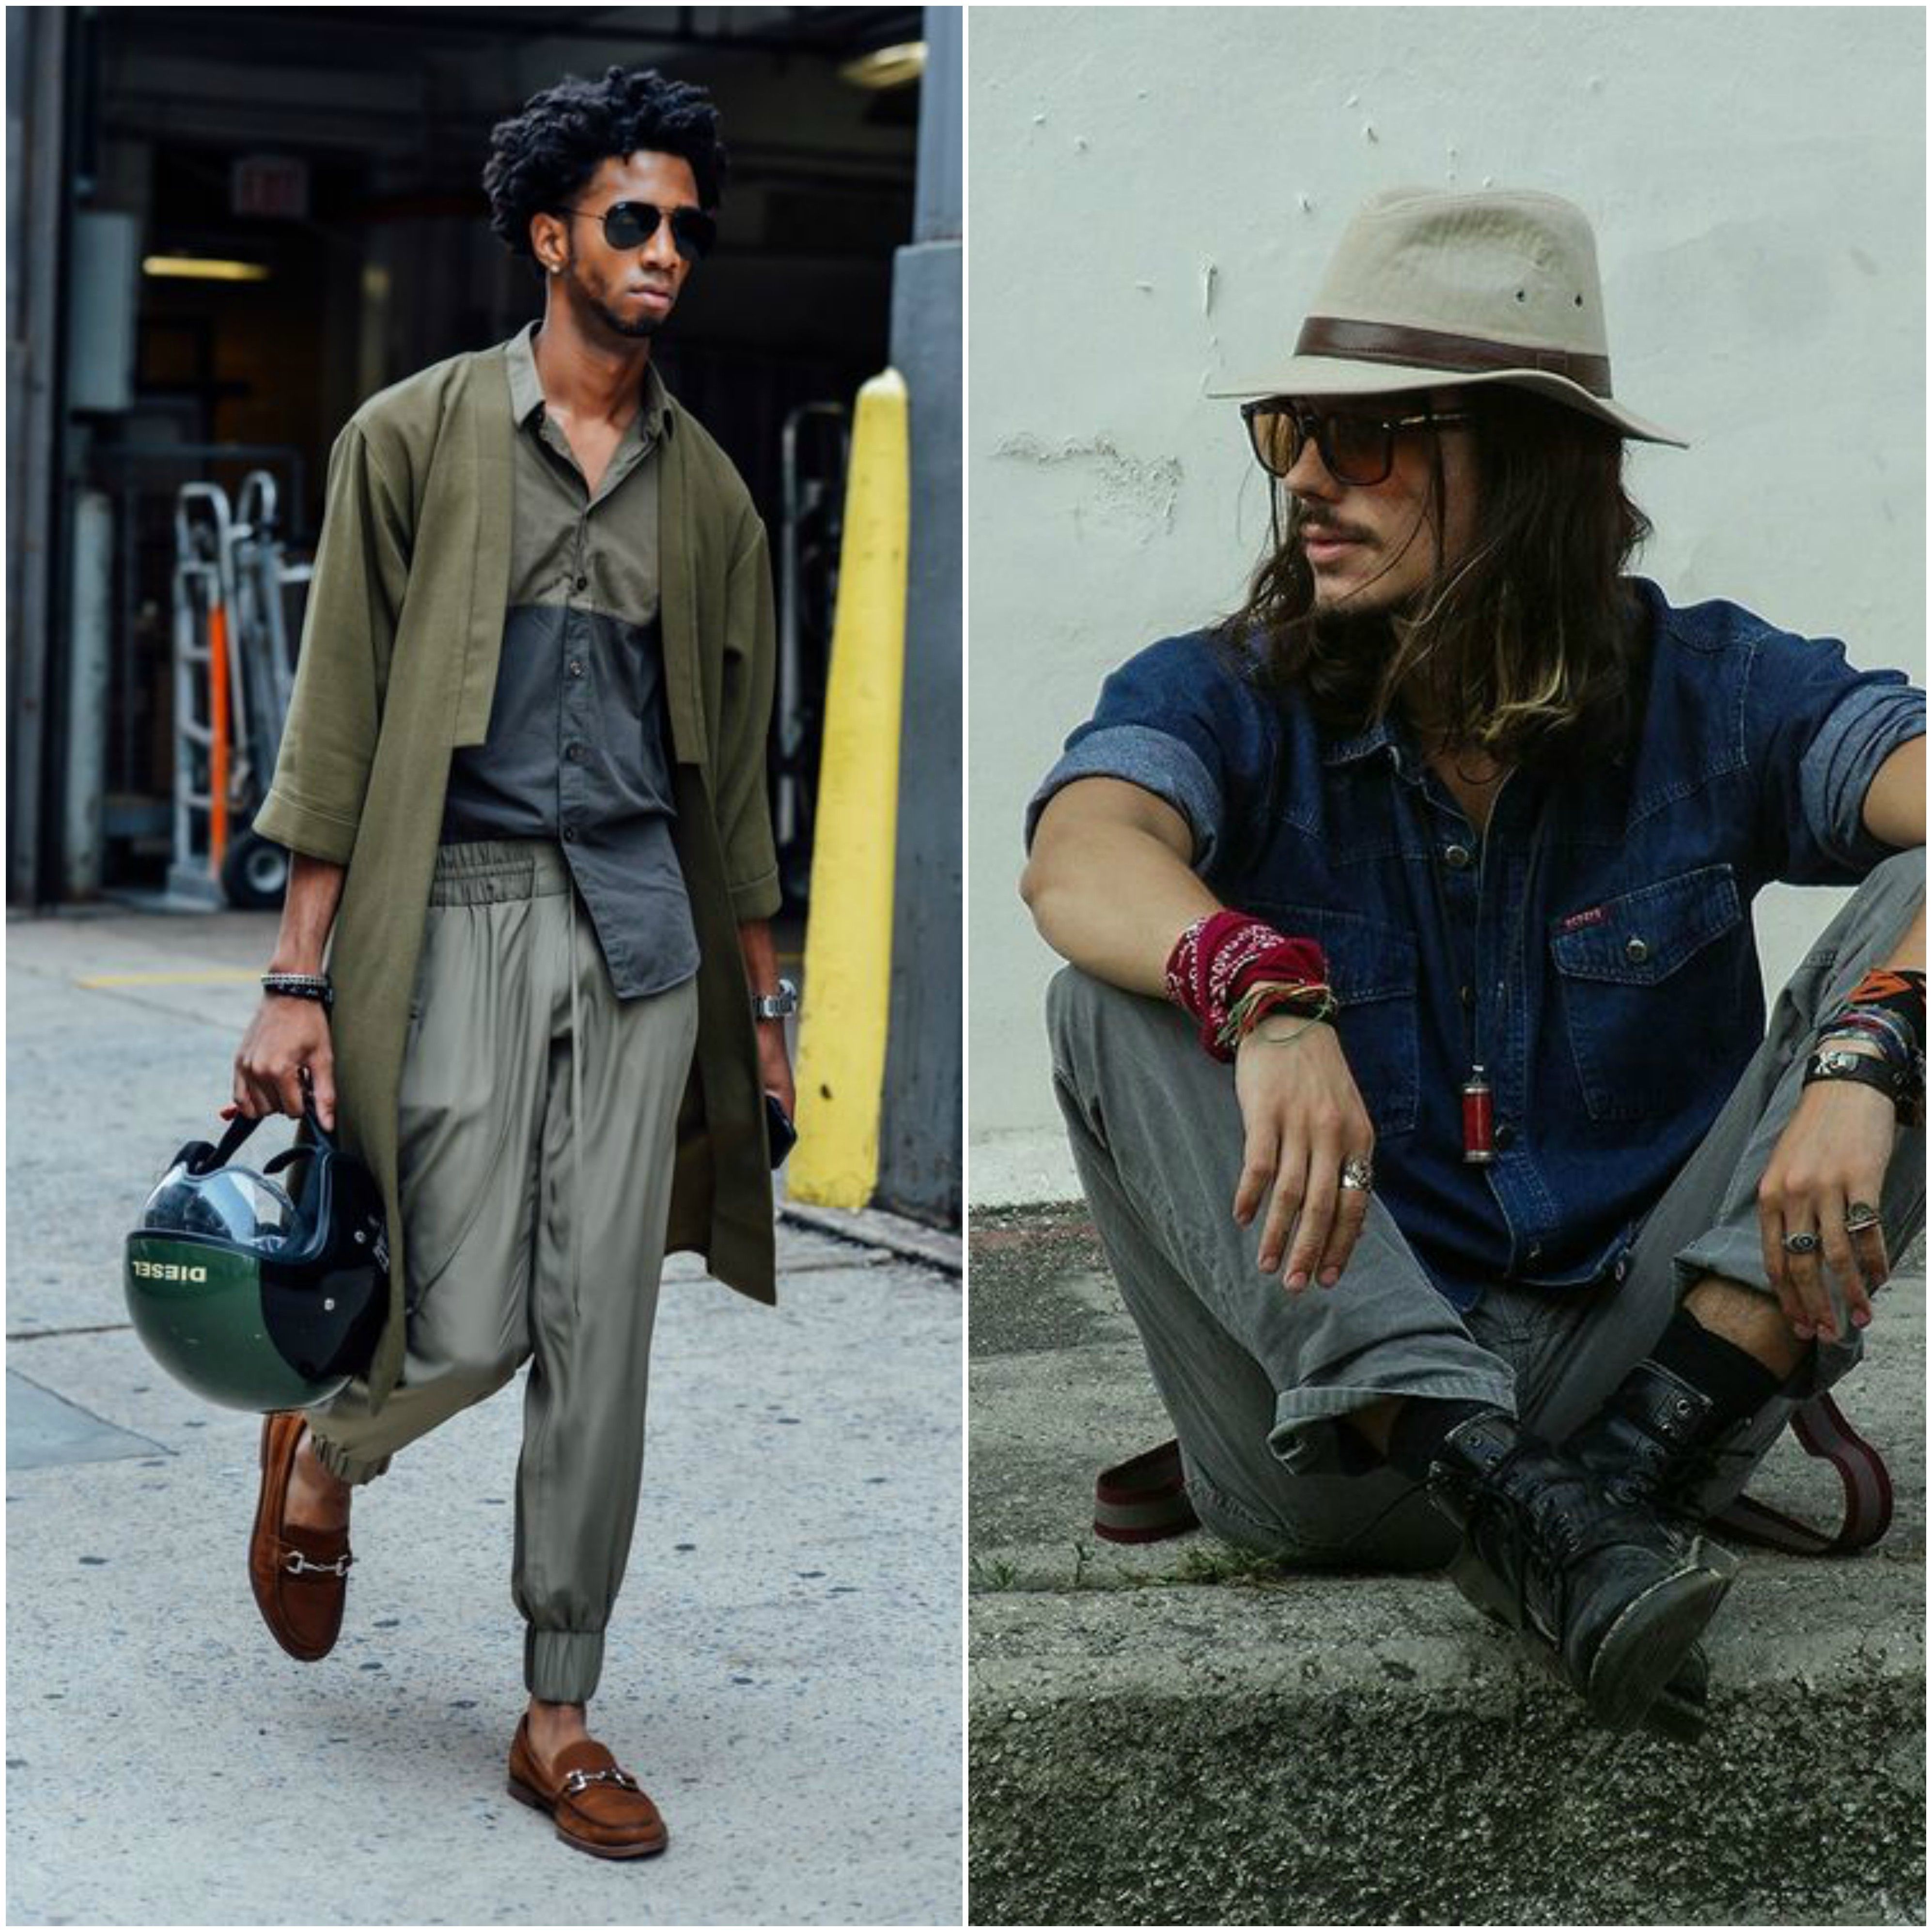 5 Men Fashion Tips To Master That Bohemian Style You Desire So Much - 5 Men Fashion Tips To Master That Bohemian Style You Desire So Much -   18 style Bohemian men ideas